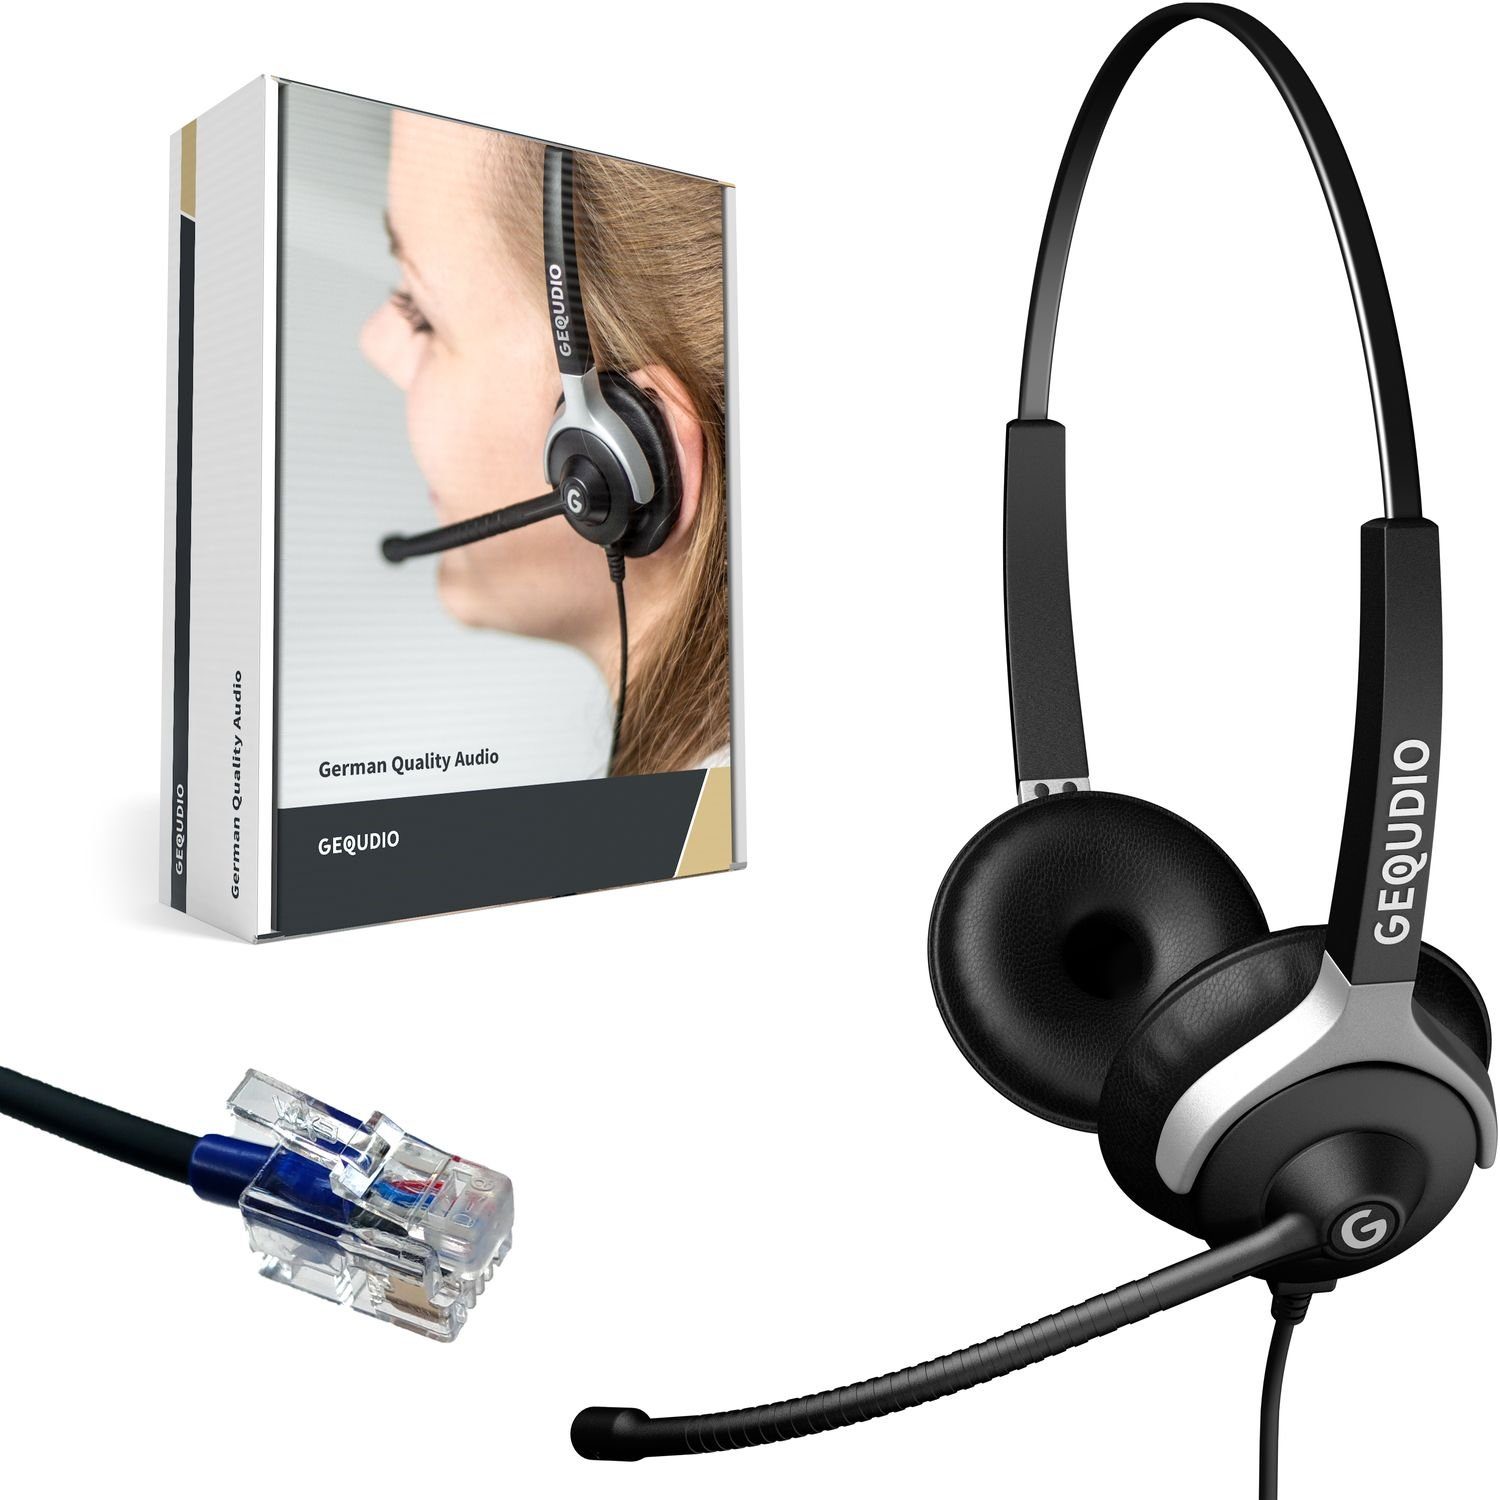 GEQUDIO für Cisco Telefone mit RJ-Anschluss Headset (2-Ohr-Headset, 80g leicht, Bügel aus Federstahl, mit Wechselverschluss für mehrere Endgeräte, inklusive Anschlusskabel) | Kopfhörer